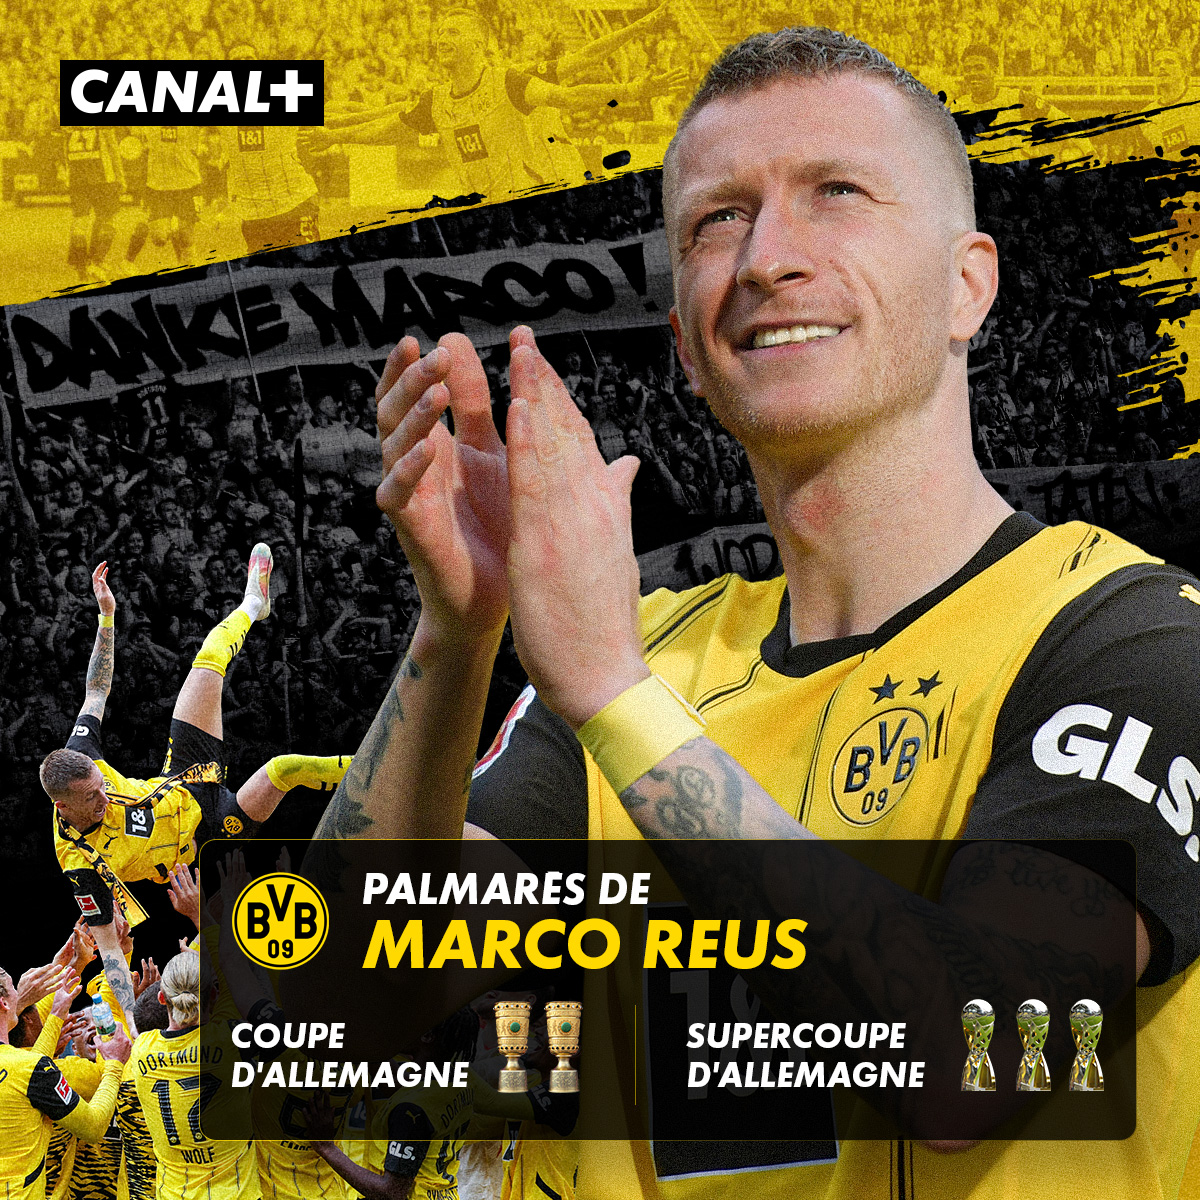 #LDC 🏆 : Après 12 ans de loyauté, Marco Reus va disputer ce samedi son dernier match sous les couleurs de Dortmund. Entre lui et Toni Kroos, qui va remporter la dernière danse ? 🧐